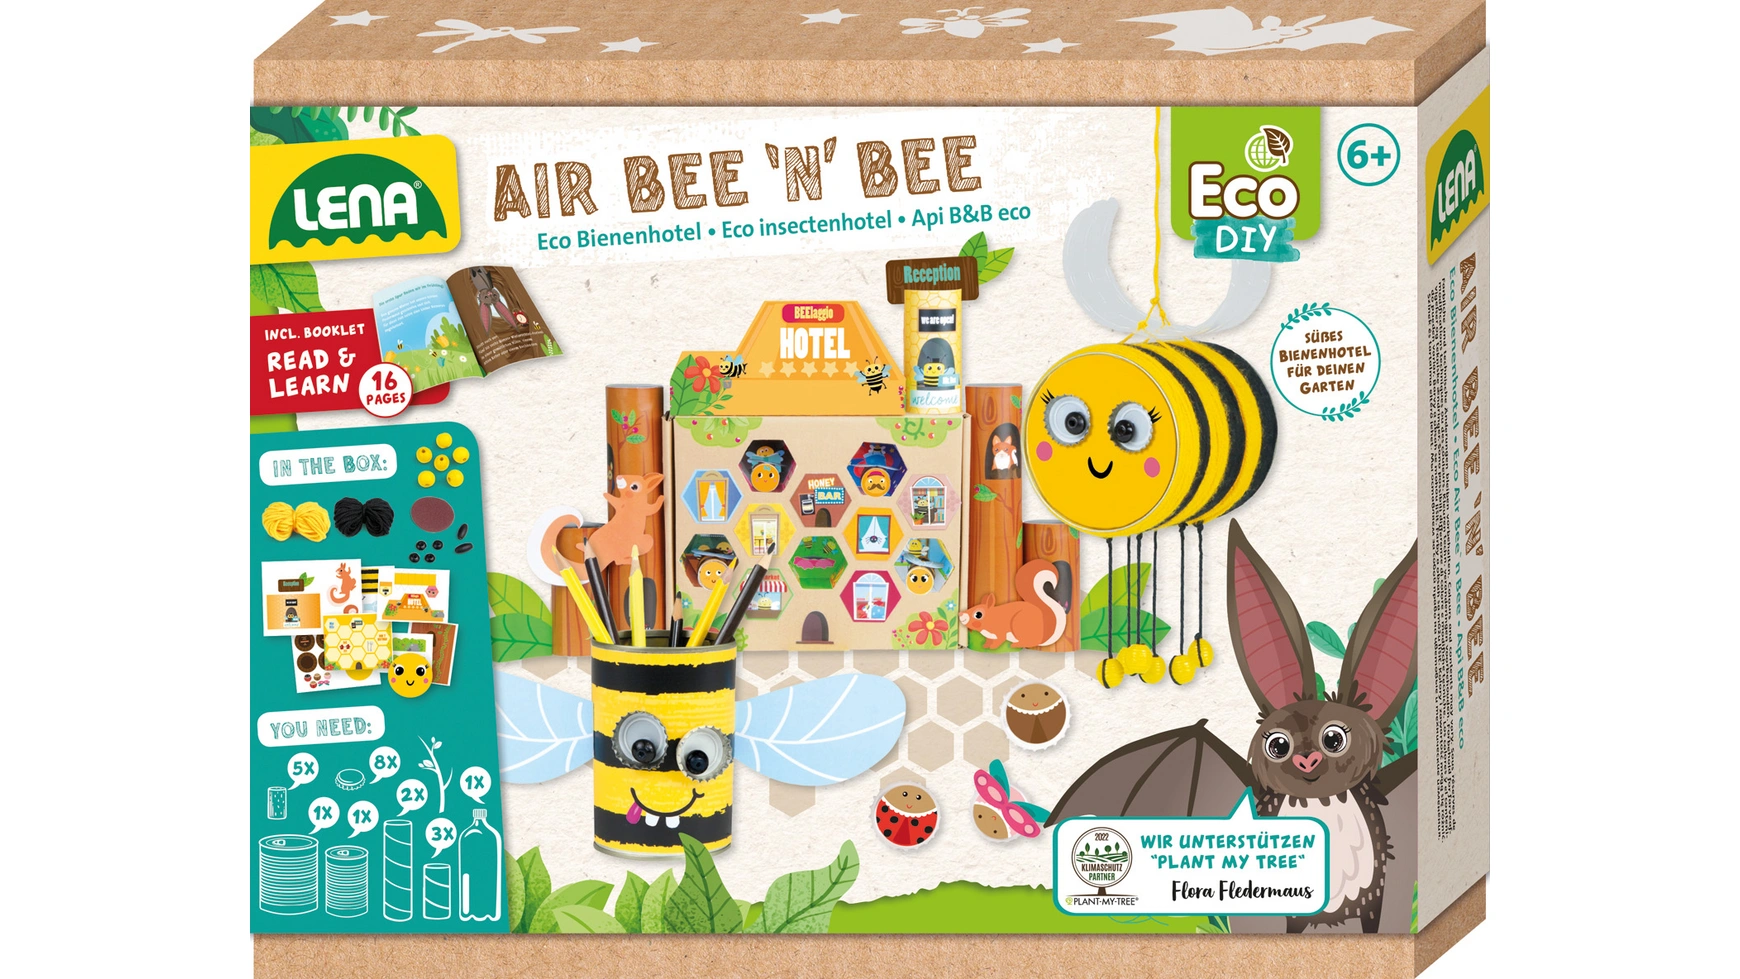 Eco air bee n bee, складной ящик Lena